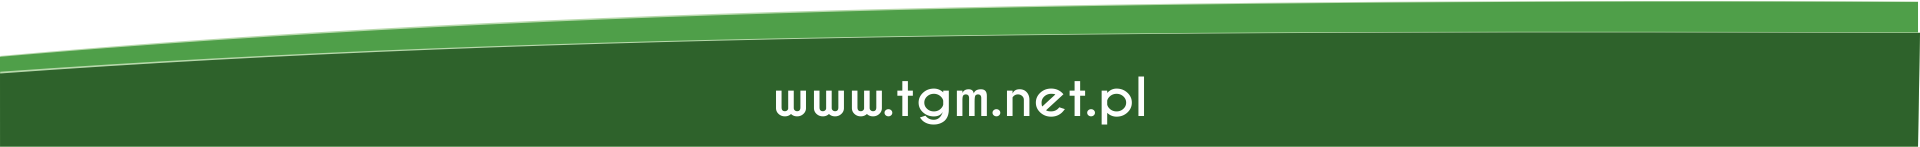 www.tgm.net.pl